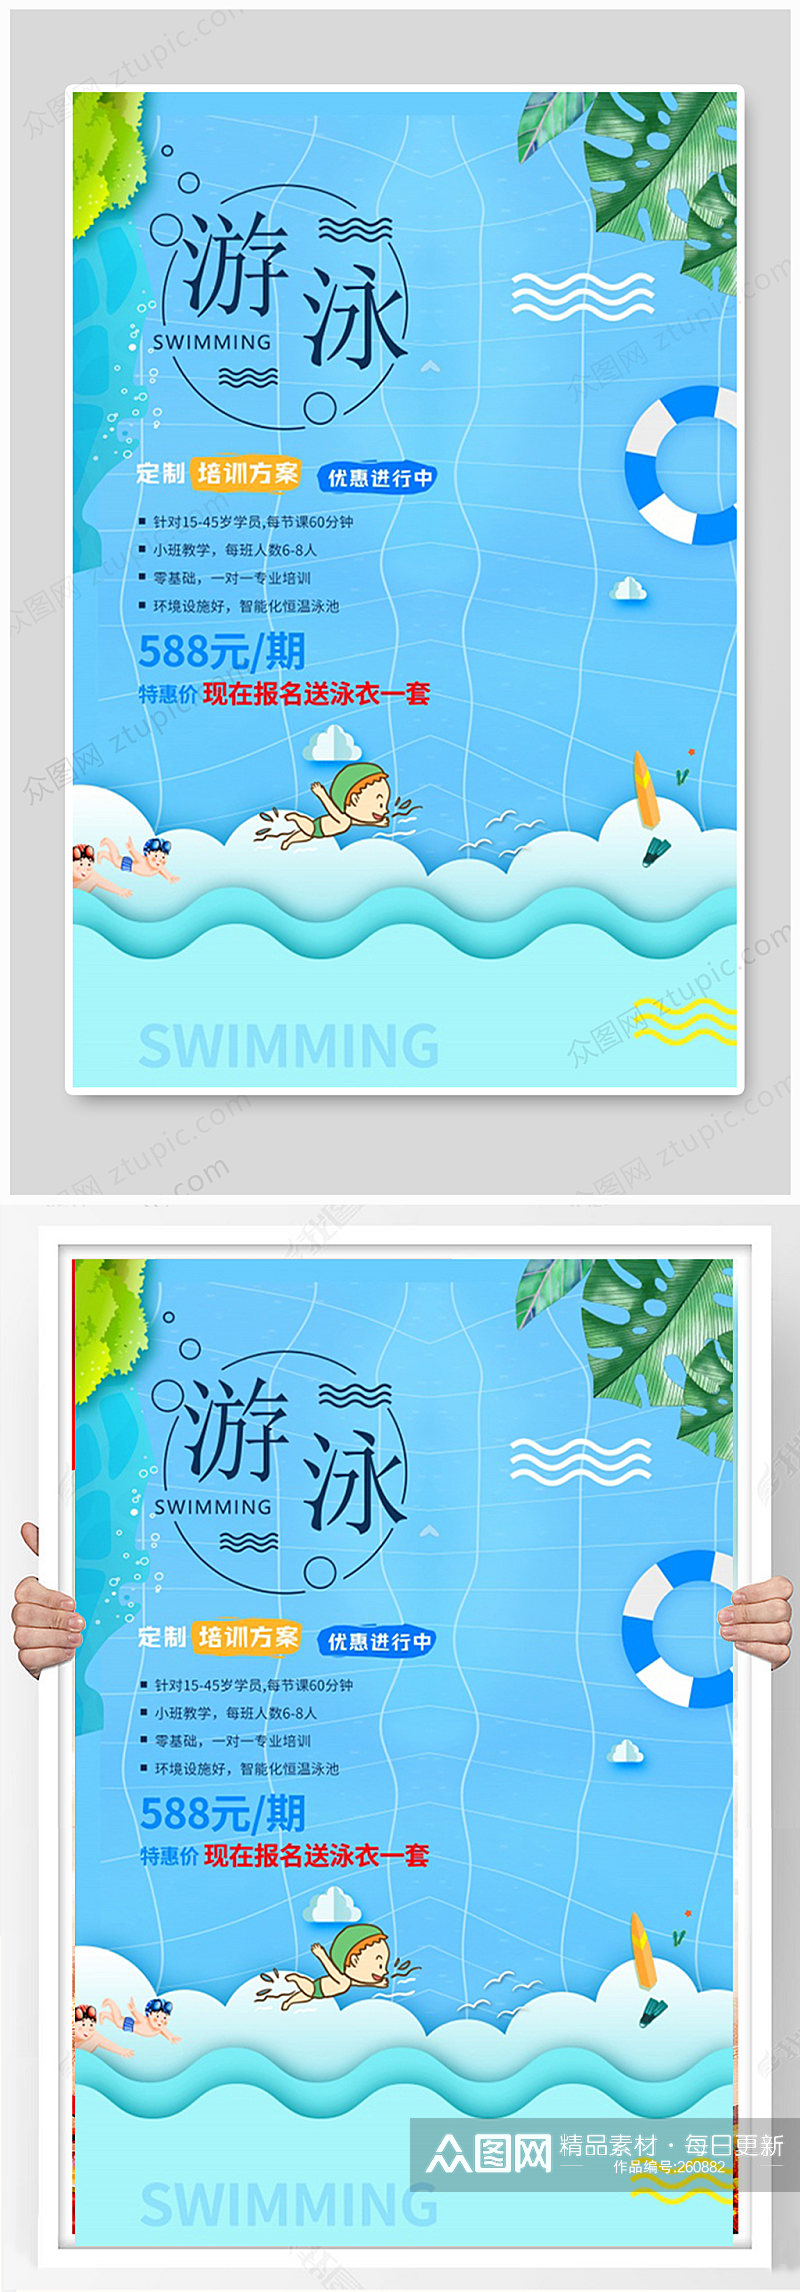 蓝色游泳培训海报设计素材